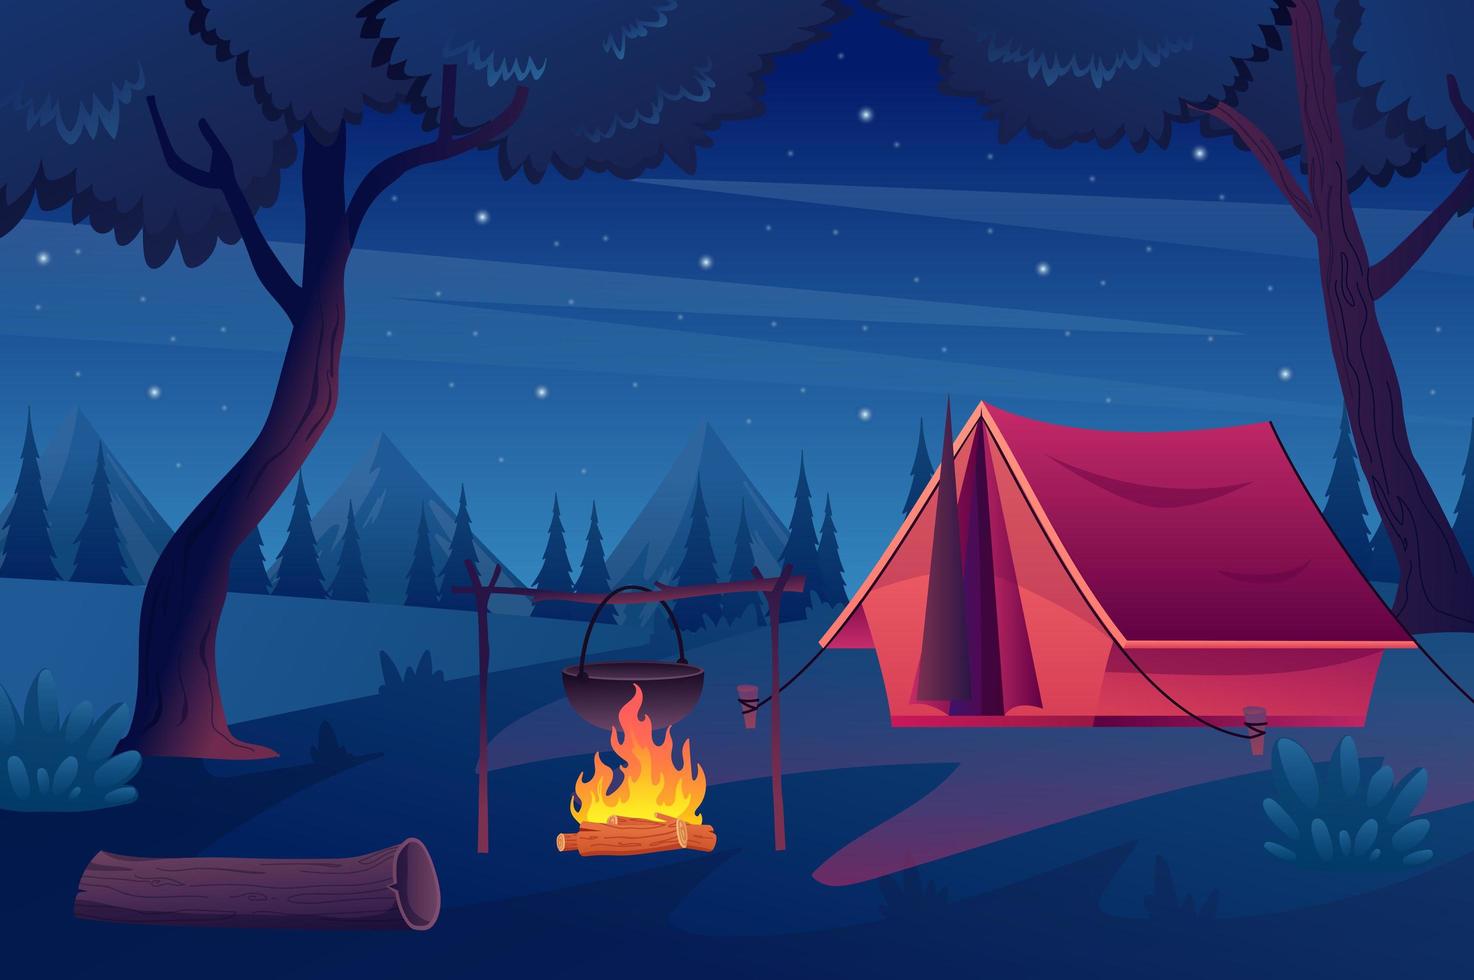 trekking avec tente dans le concept de forêt en dessin animé plat. scène de nuit dans les bois, ciel étoilé, camping et cheminée, montagnes à l'horizon. randonnée d'été en plein air. fond d'illustration vectorielle vecteur